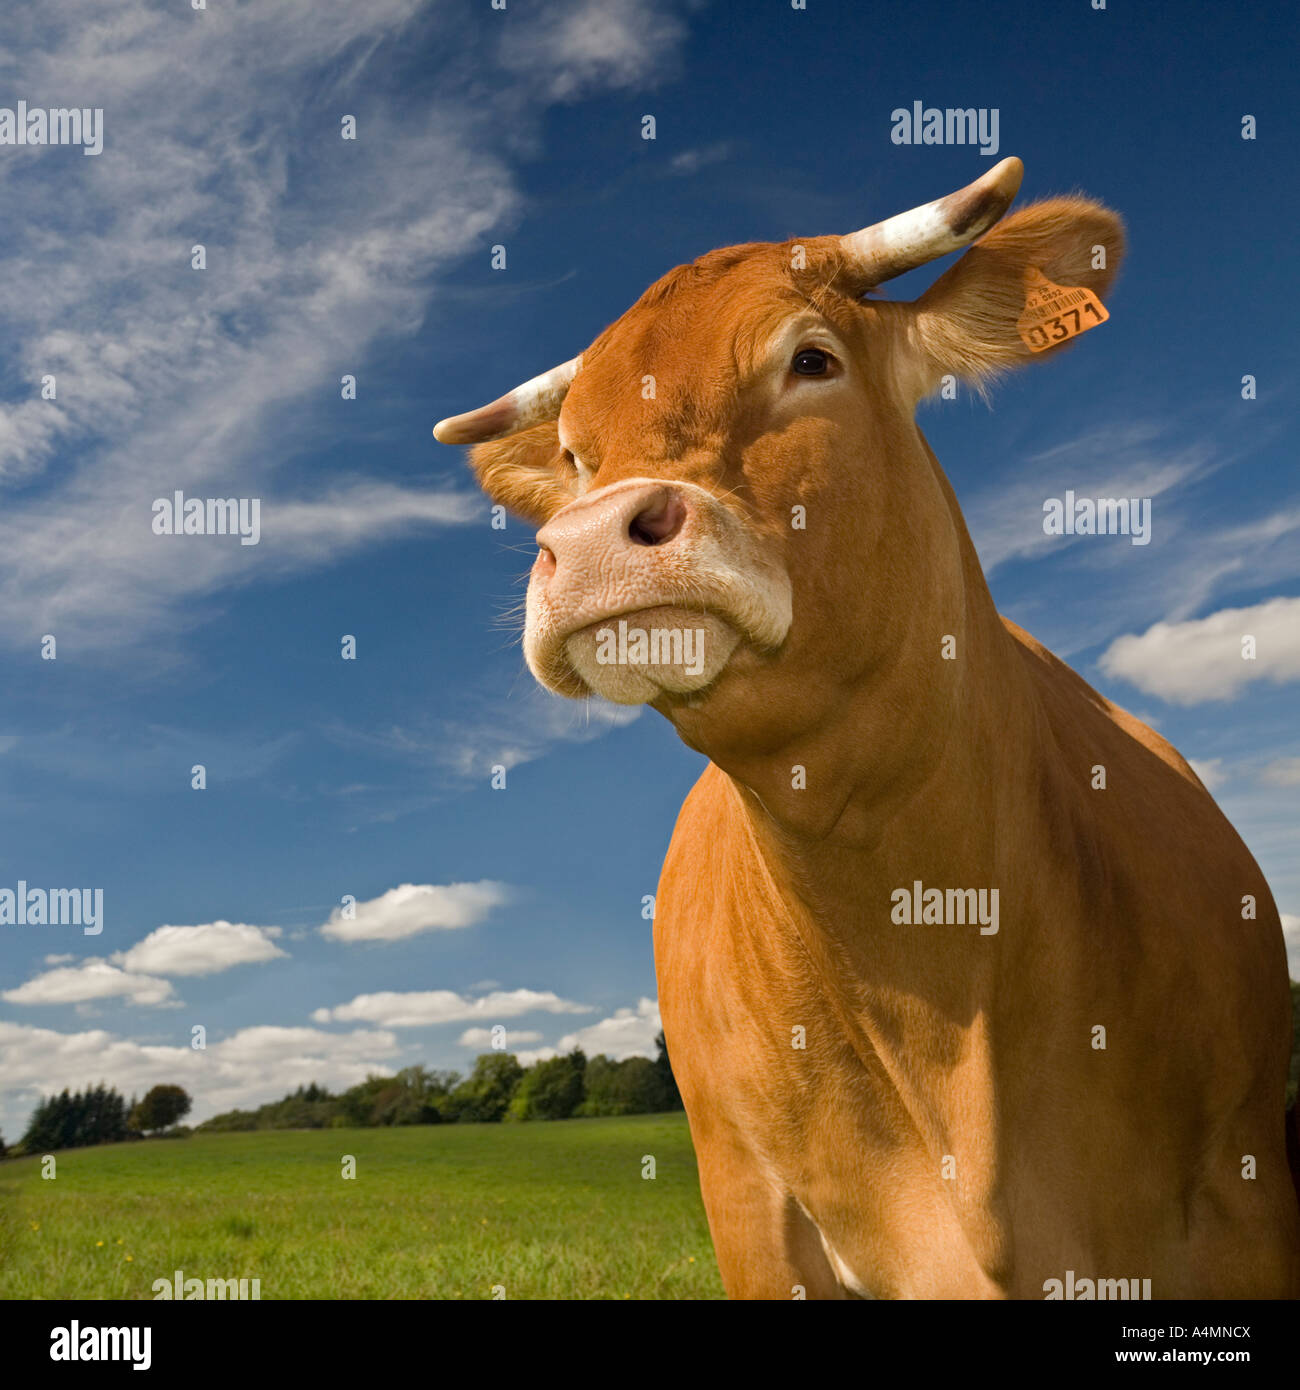 A Limousin cow (Bos taurus domesticus) on a meadow (Haute-Vienne - France). Vache de race Limousine dans un pré (France). Stock Photo